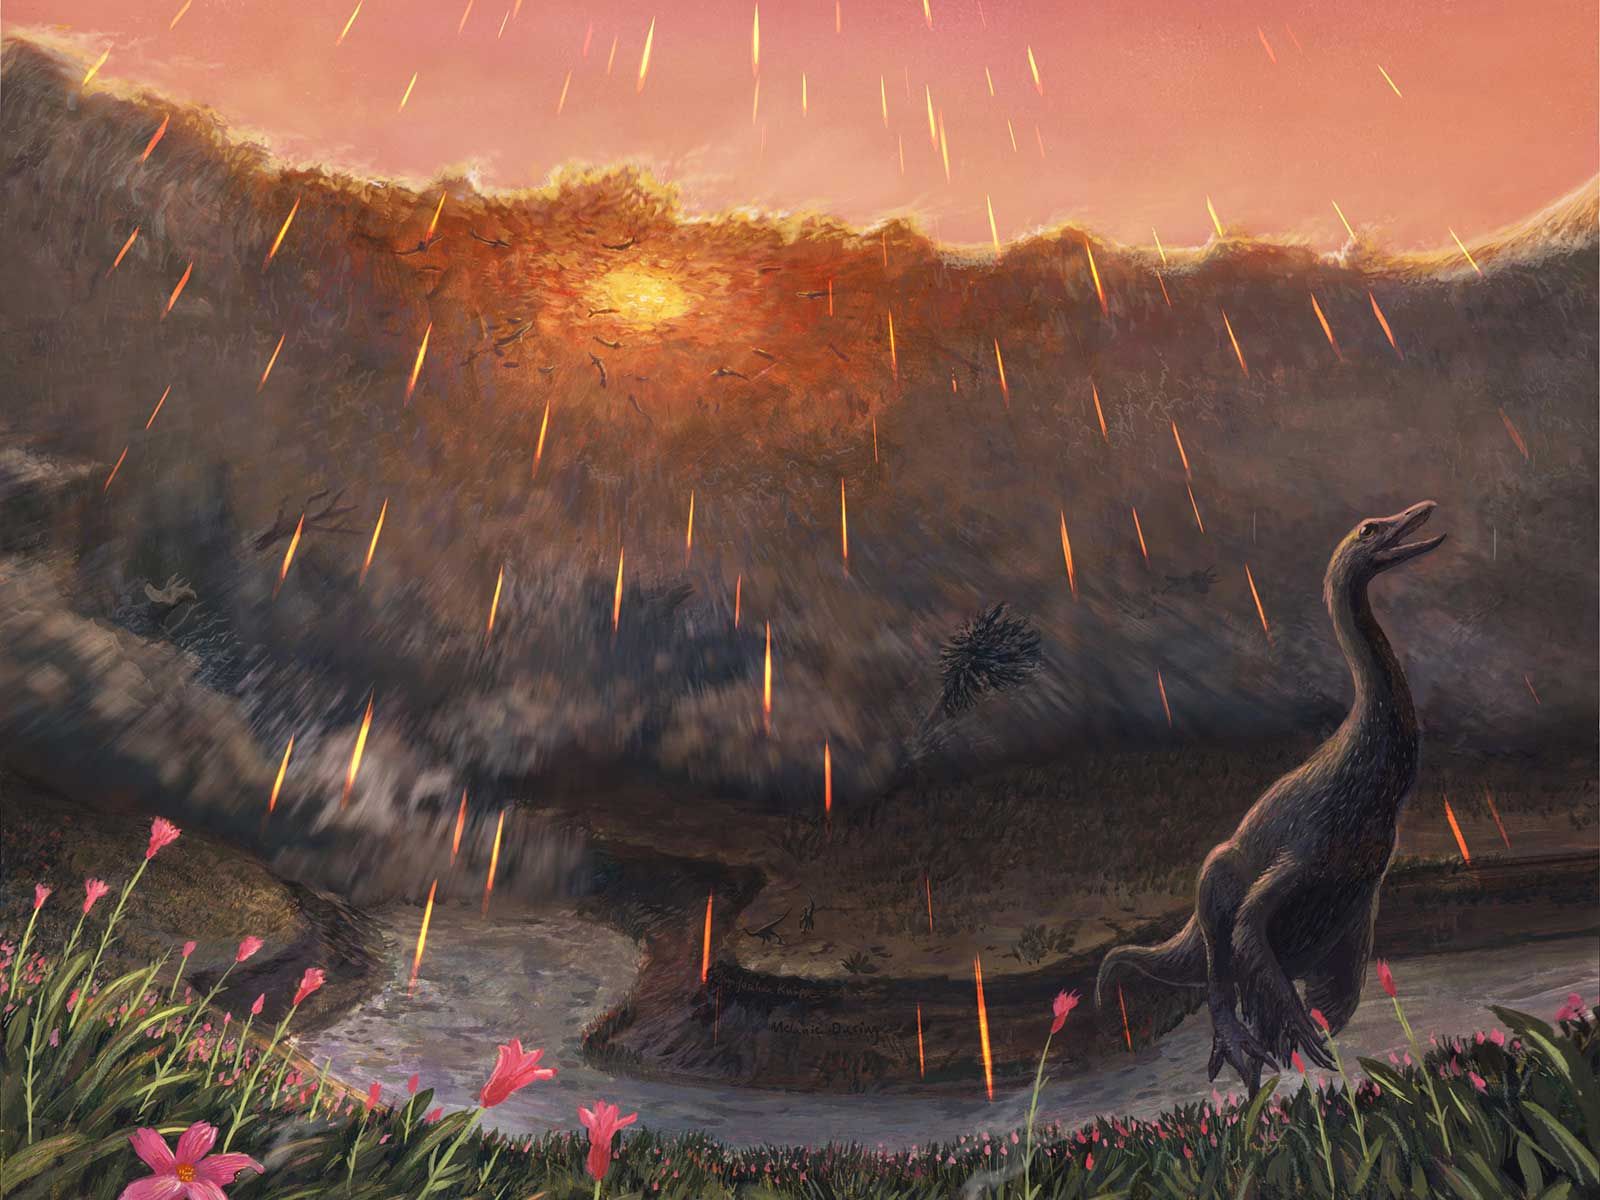 astéroïde qui a décimé les dinosaures frappés au printemps |  La science